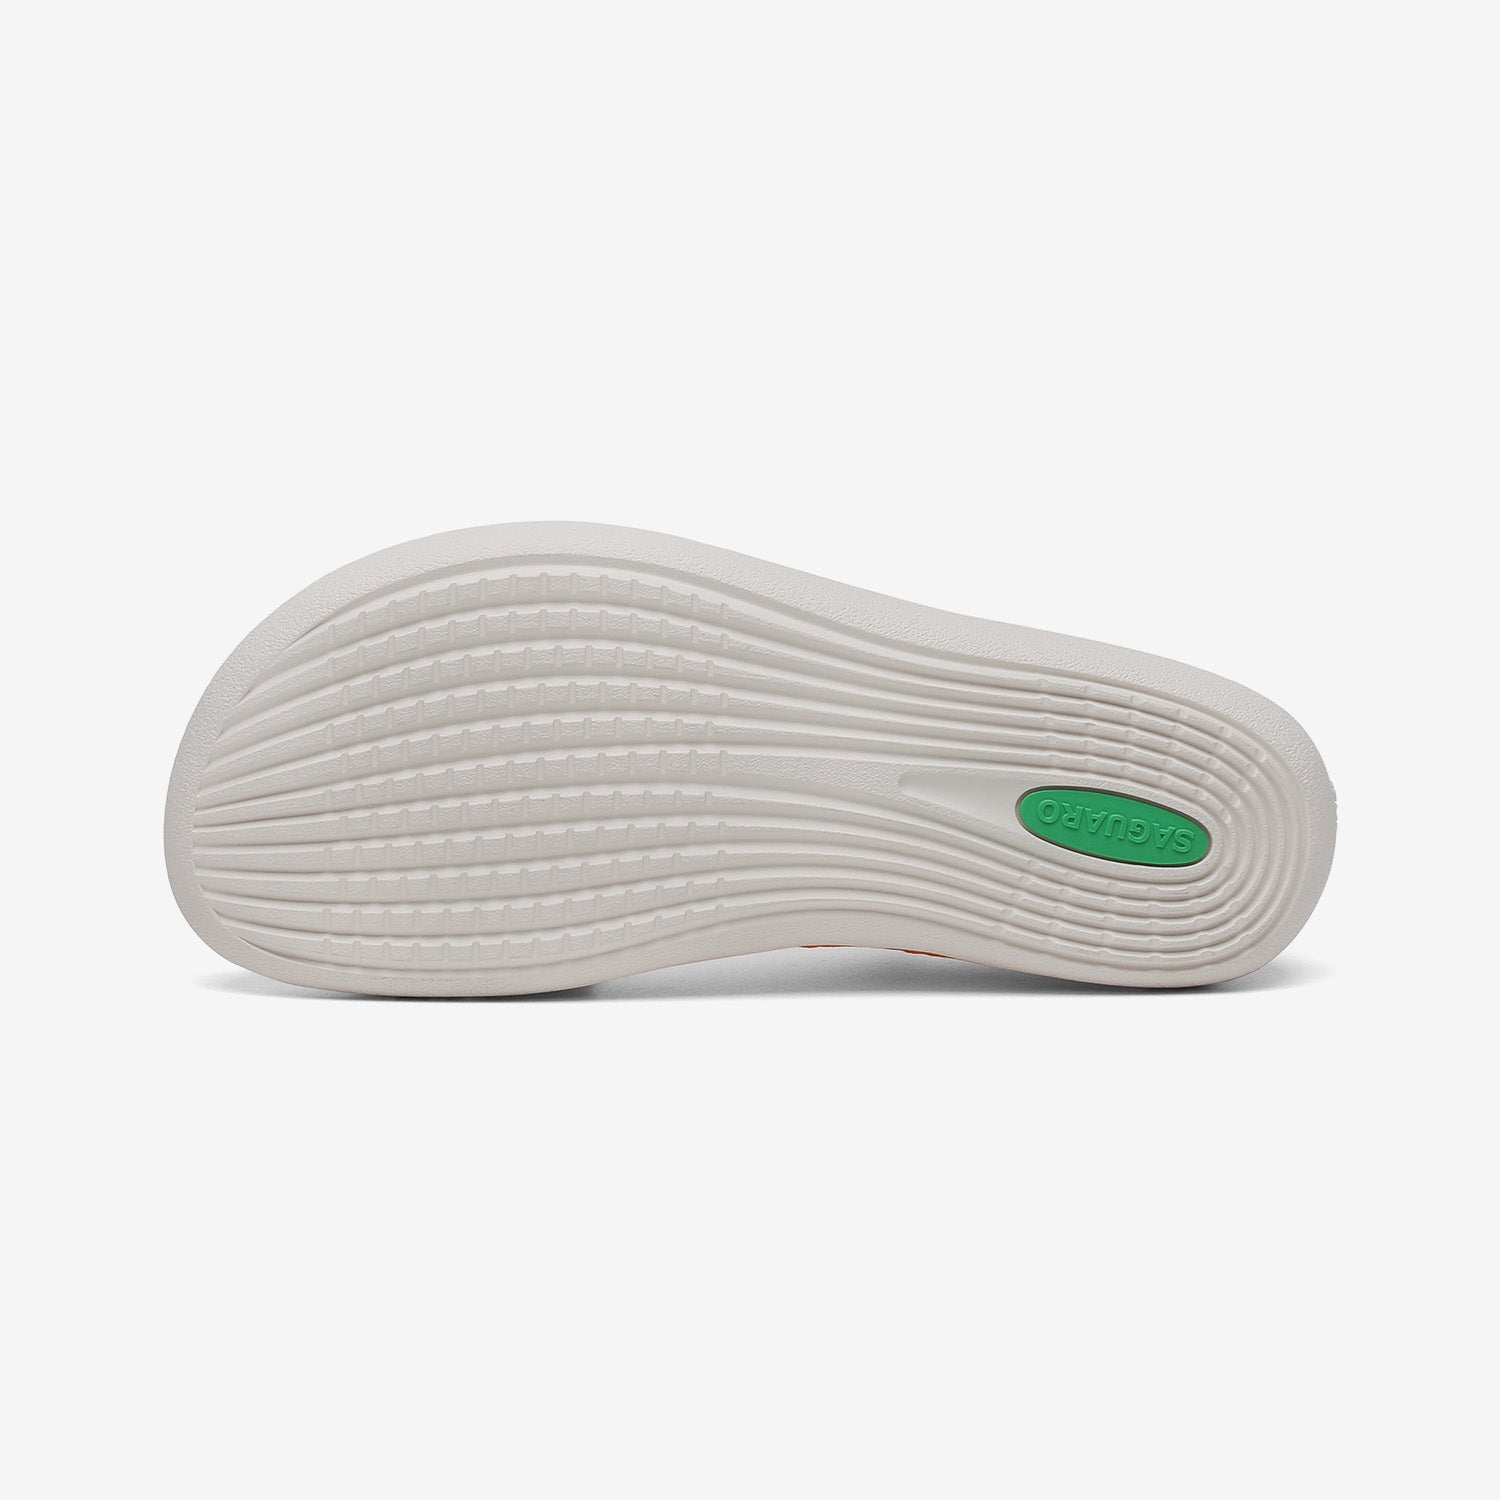 Agile II - Barefoot Sock Shoes